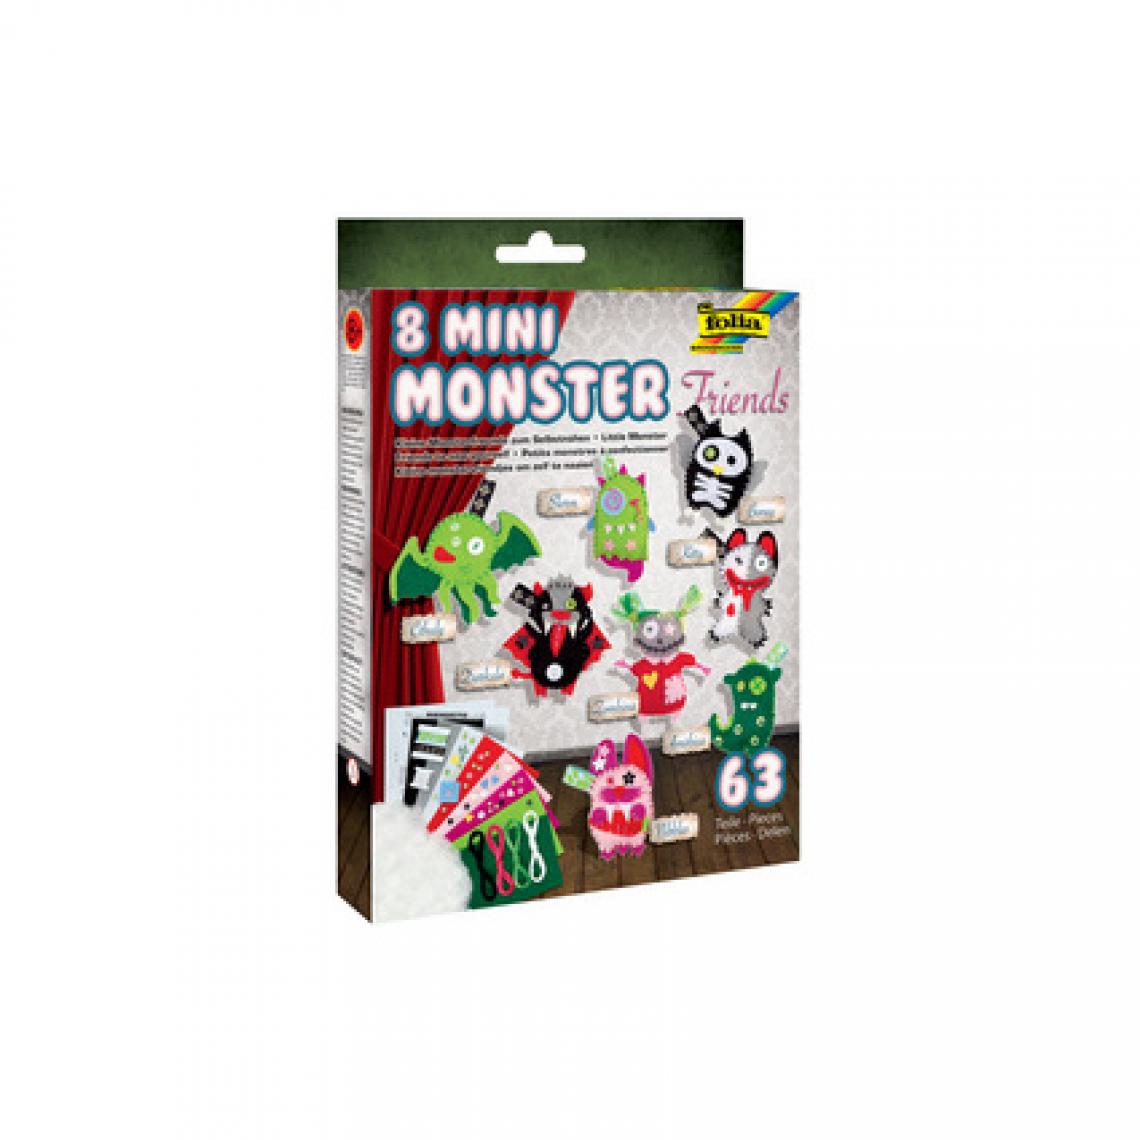 Folia - folia Petits monstres à confectionner 'Mini Monster Friends' () - Bricolage et jardinage